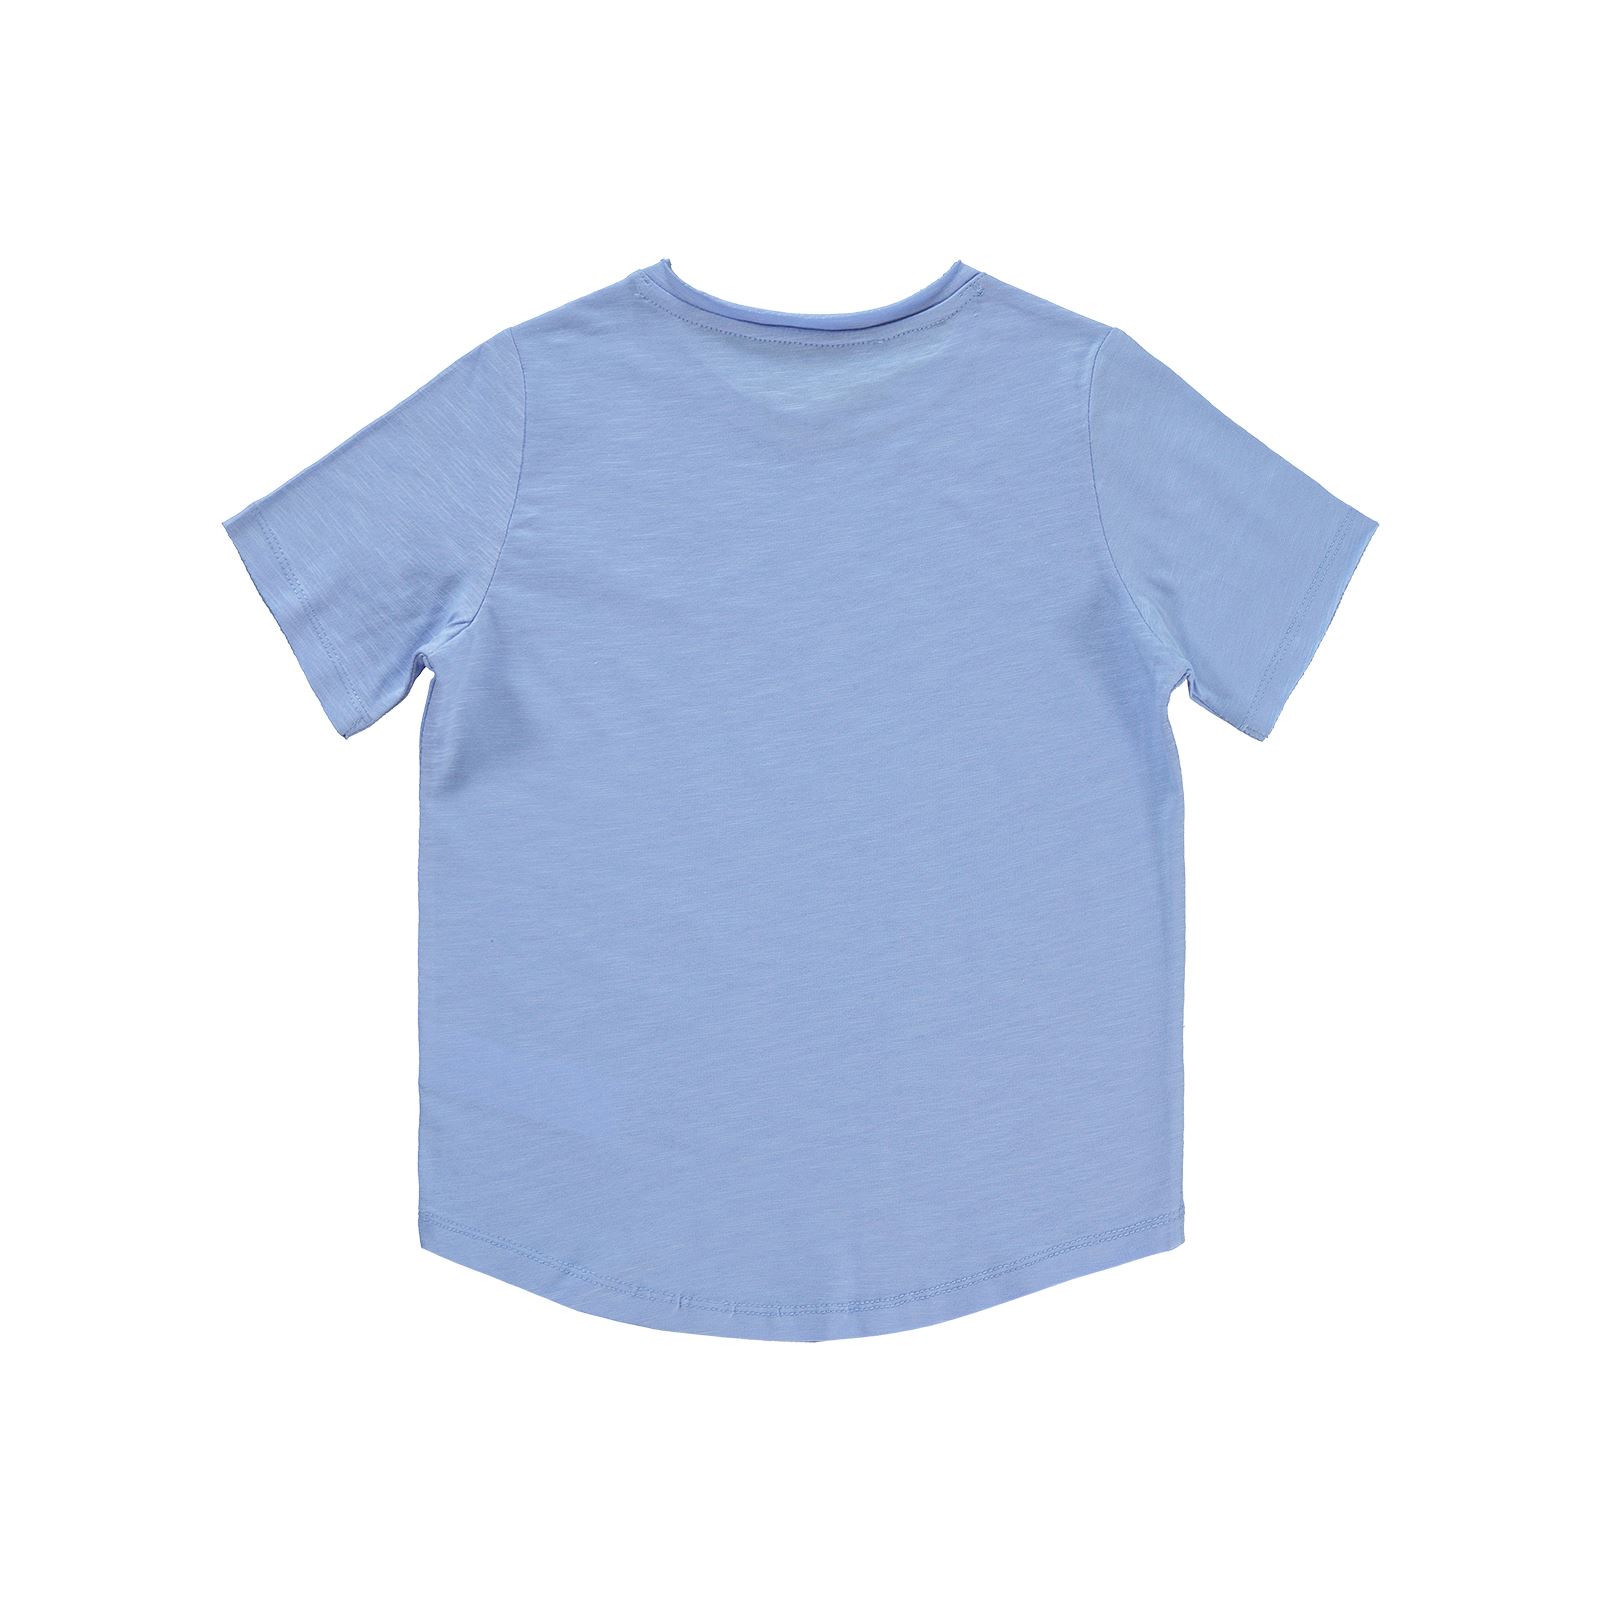 Civil Boys Erkek Çocuk Tişört 6-9 Yaş Koyu Mavi